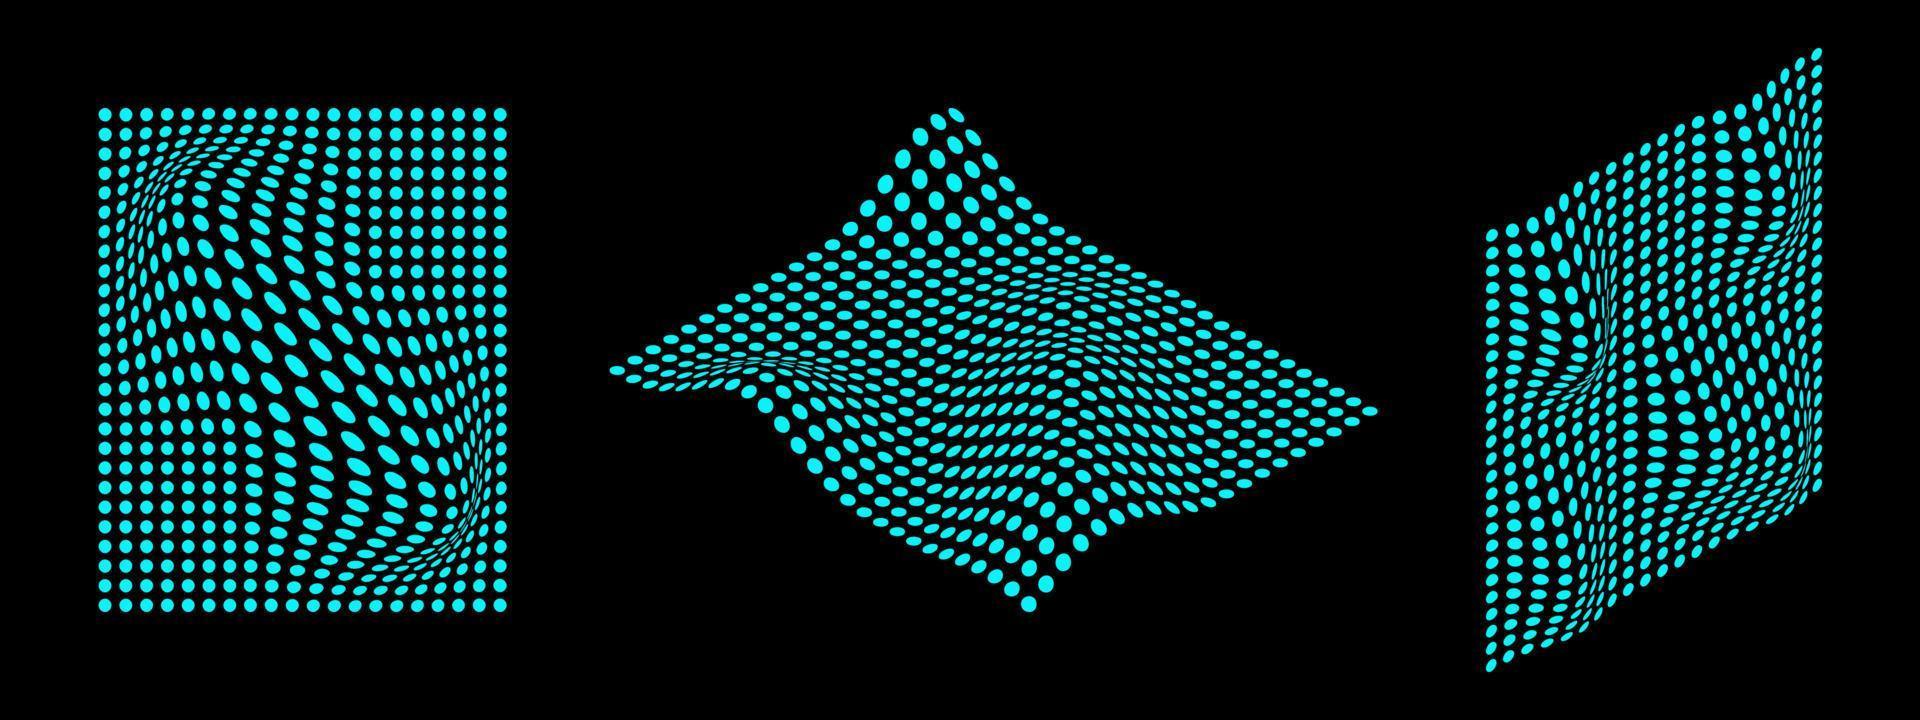 abstrato néon cyber distorções e convexo warps. futurista digital pontilhado formas. vetor ilustração do perspectiva objetos.